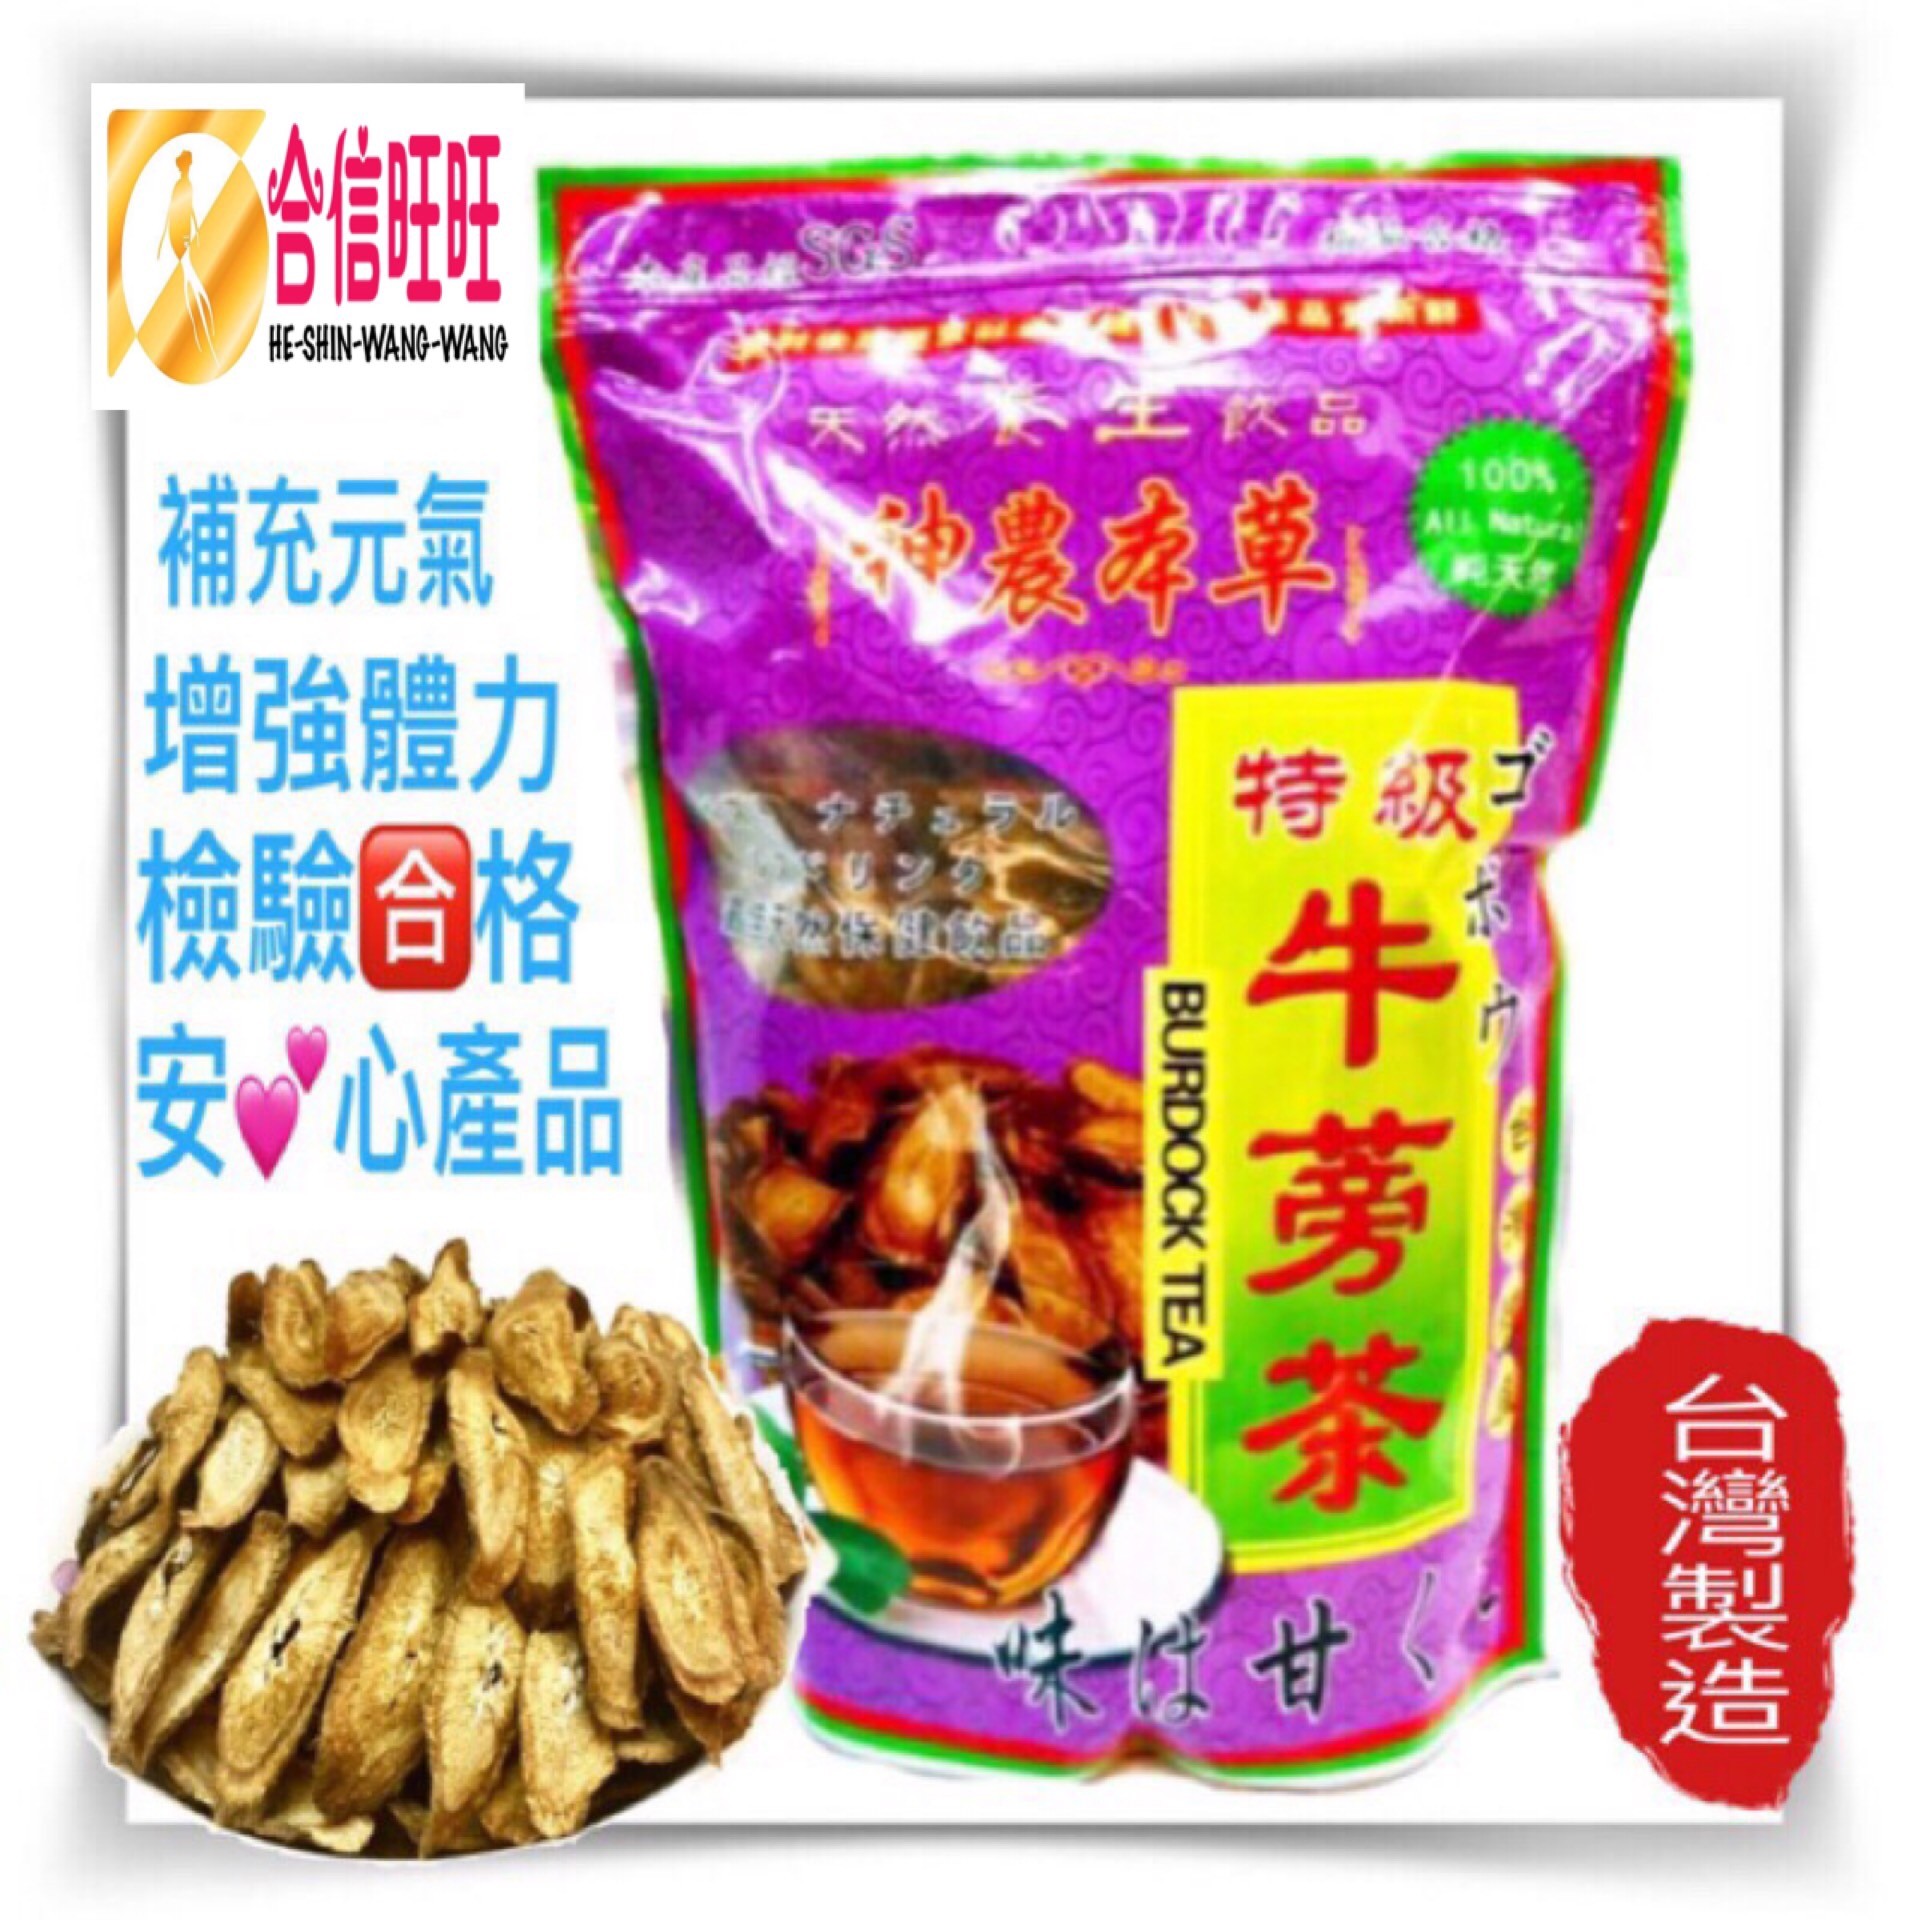 【台灣特級牛蒡茶】600克/補充元氣.增強體力